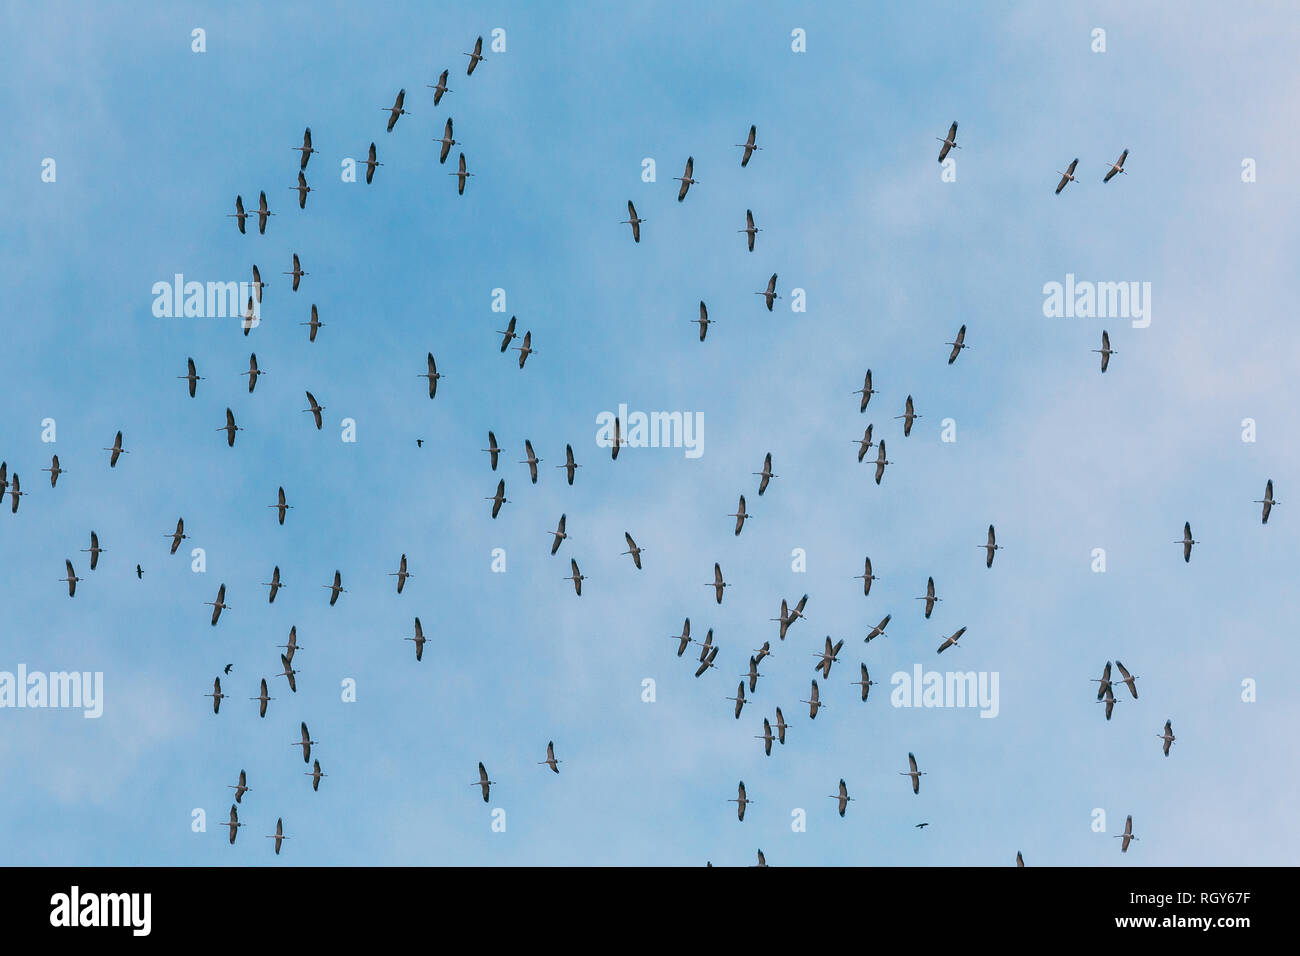 Belarus. Scharen von Kranichen oder Eurasische Kraniche fliegen In sonnigen blauen Herbsthimmel während ihrer Winter Migration. Gemeinsame Kran oder Grus Grus. Stockfoto